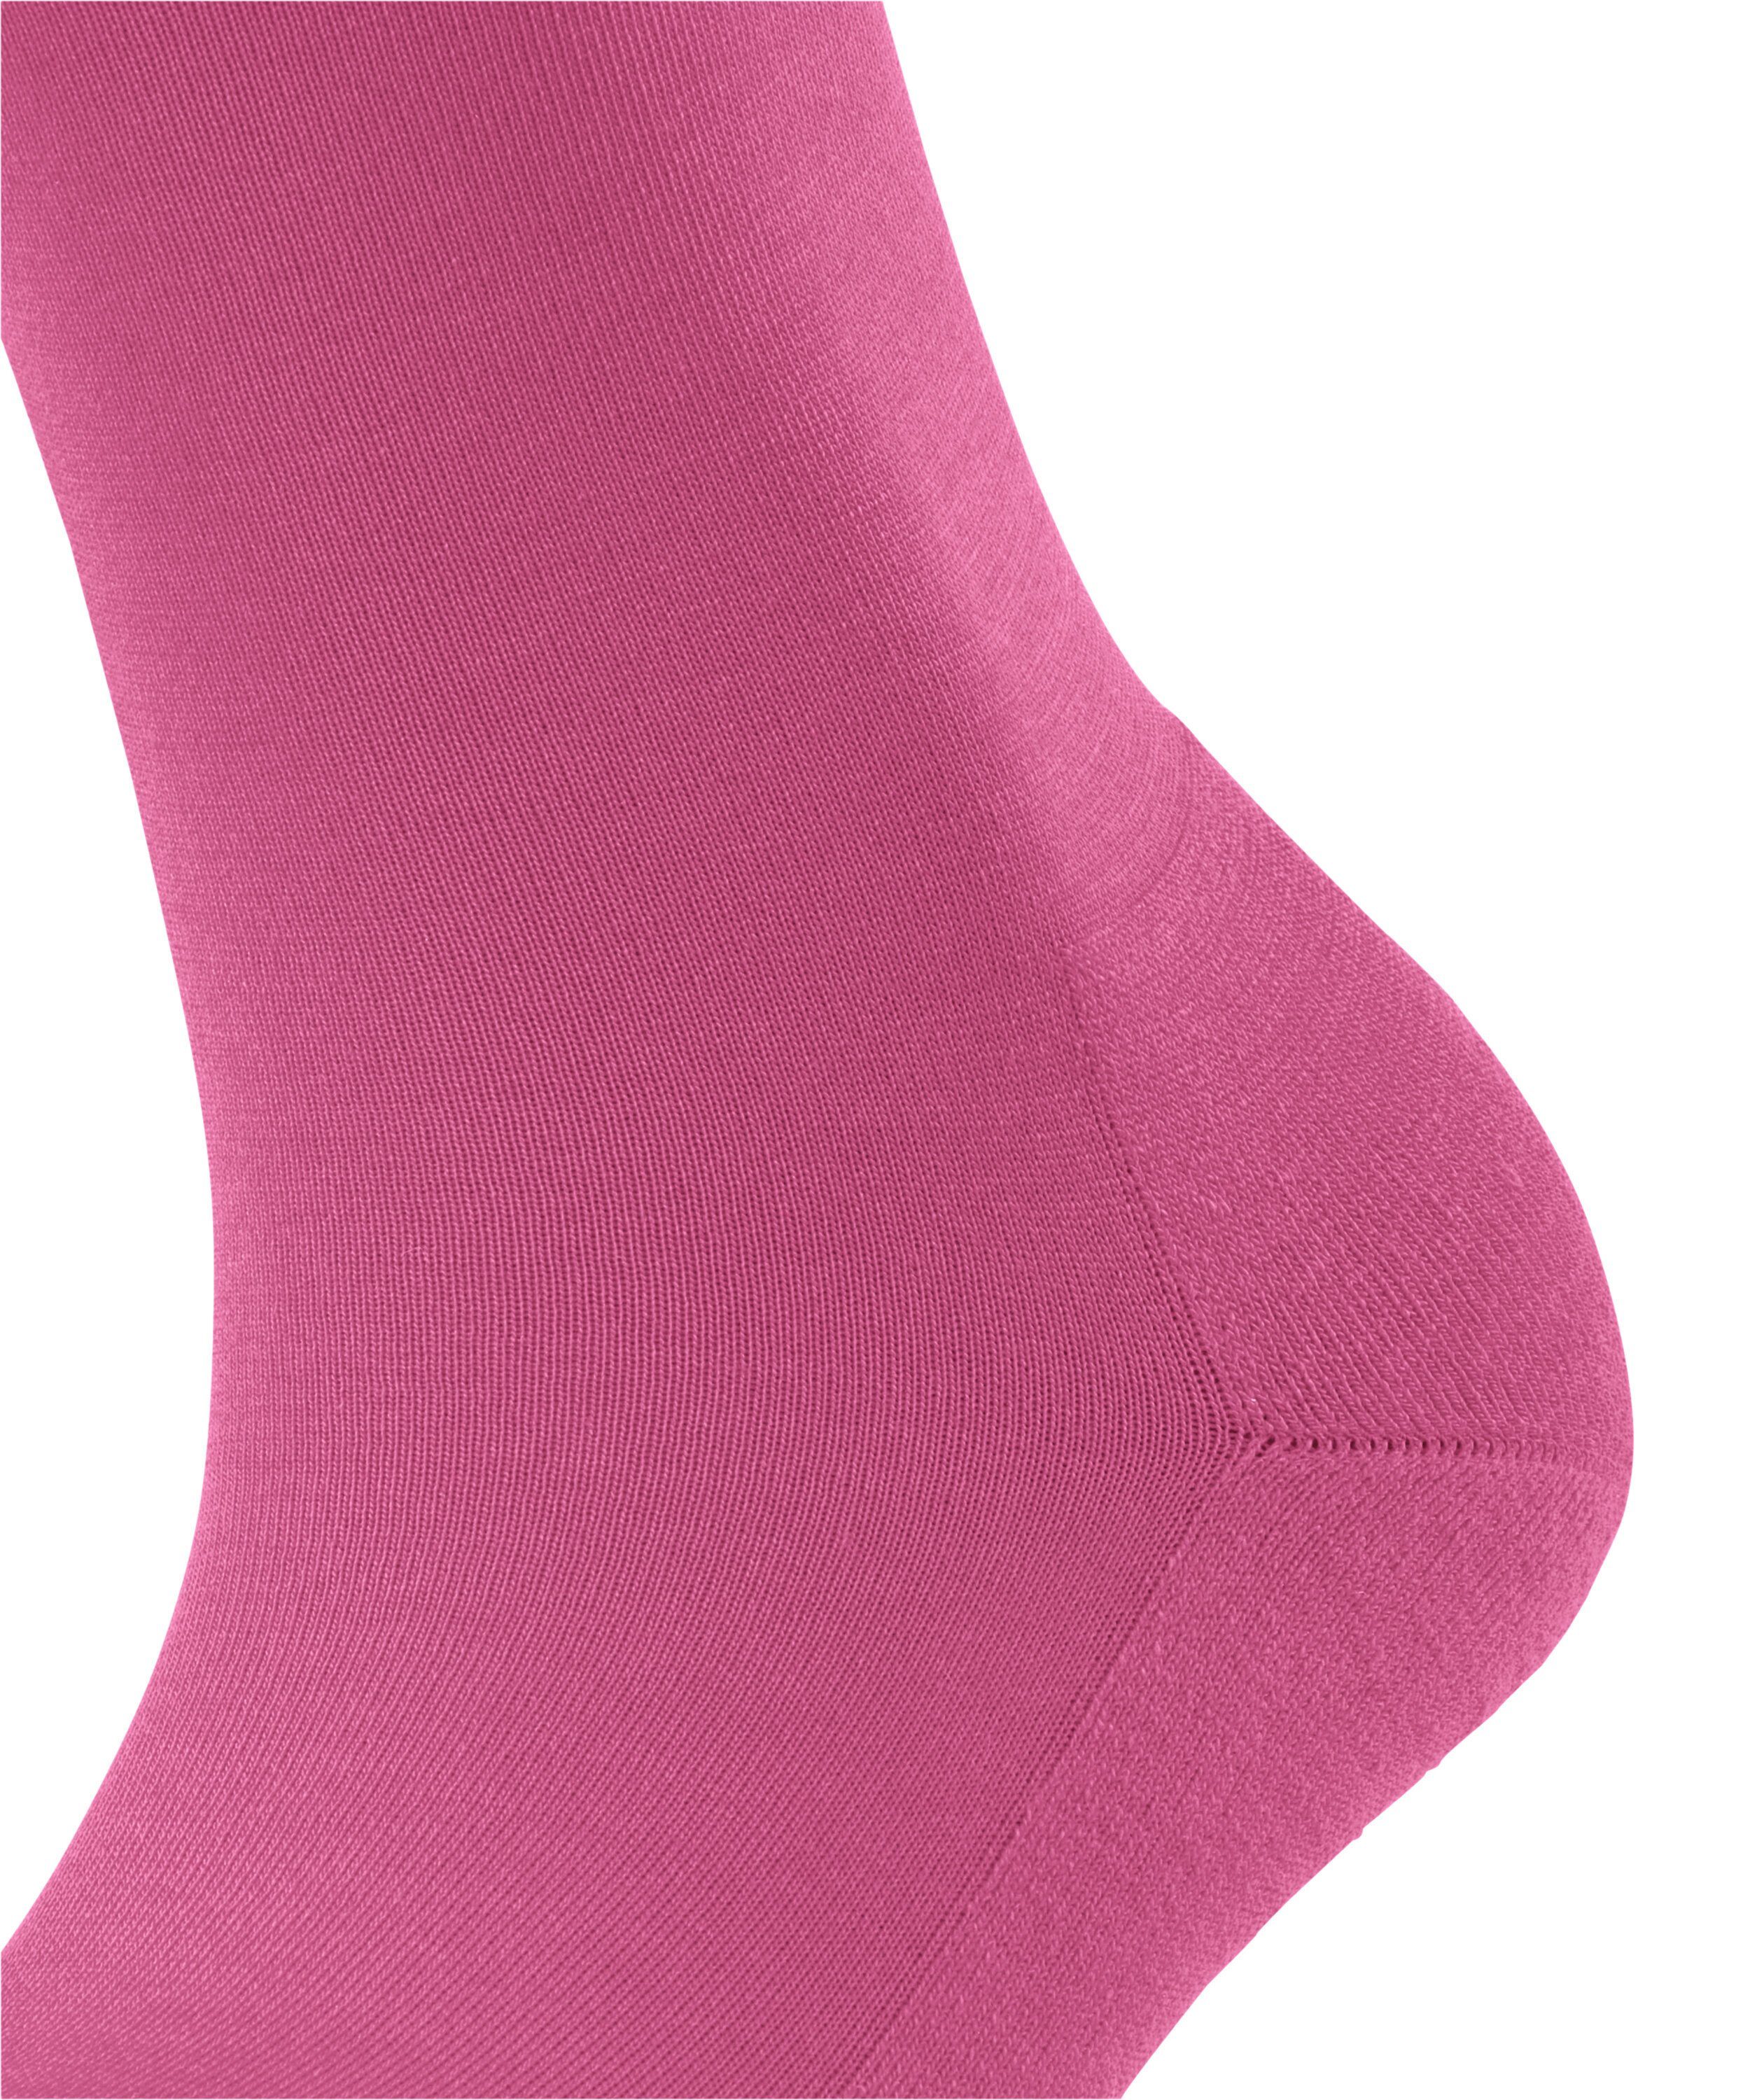 (1-Paar) Socken ClimaWool (8462) pink FALKE